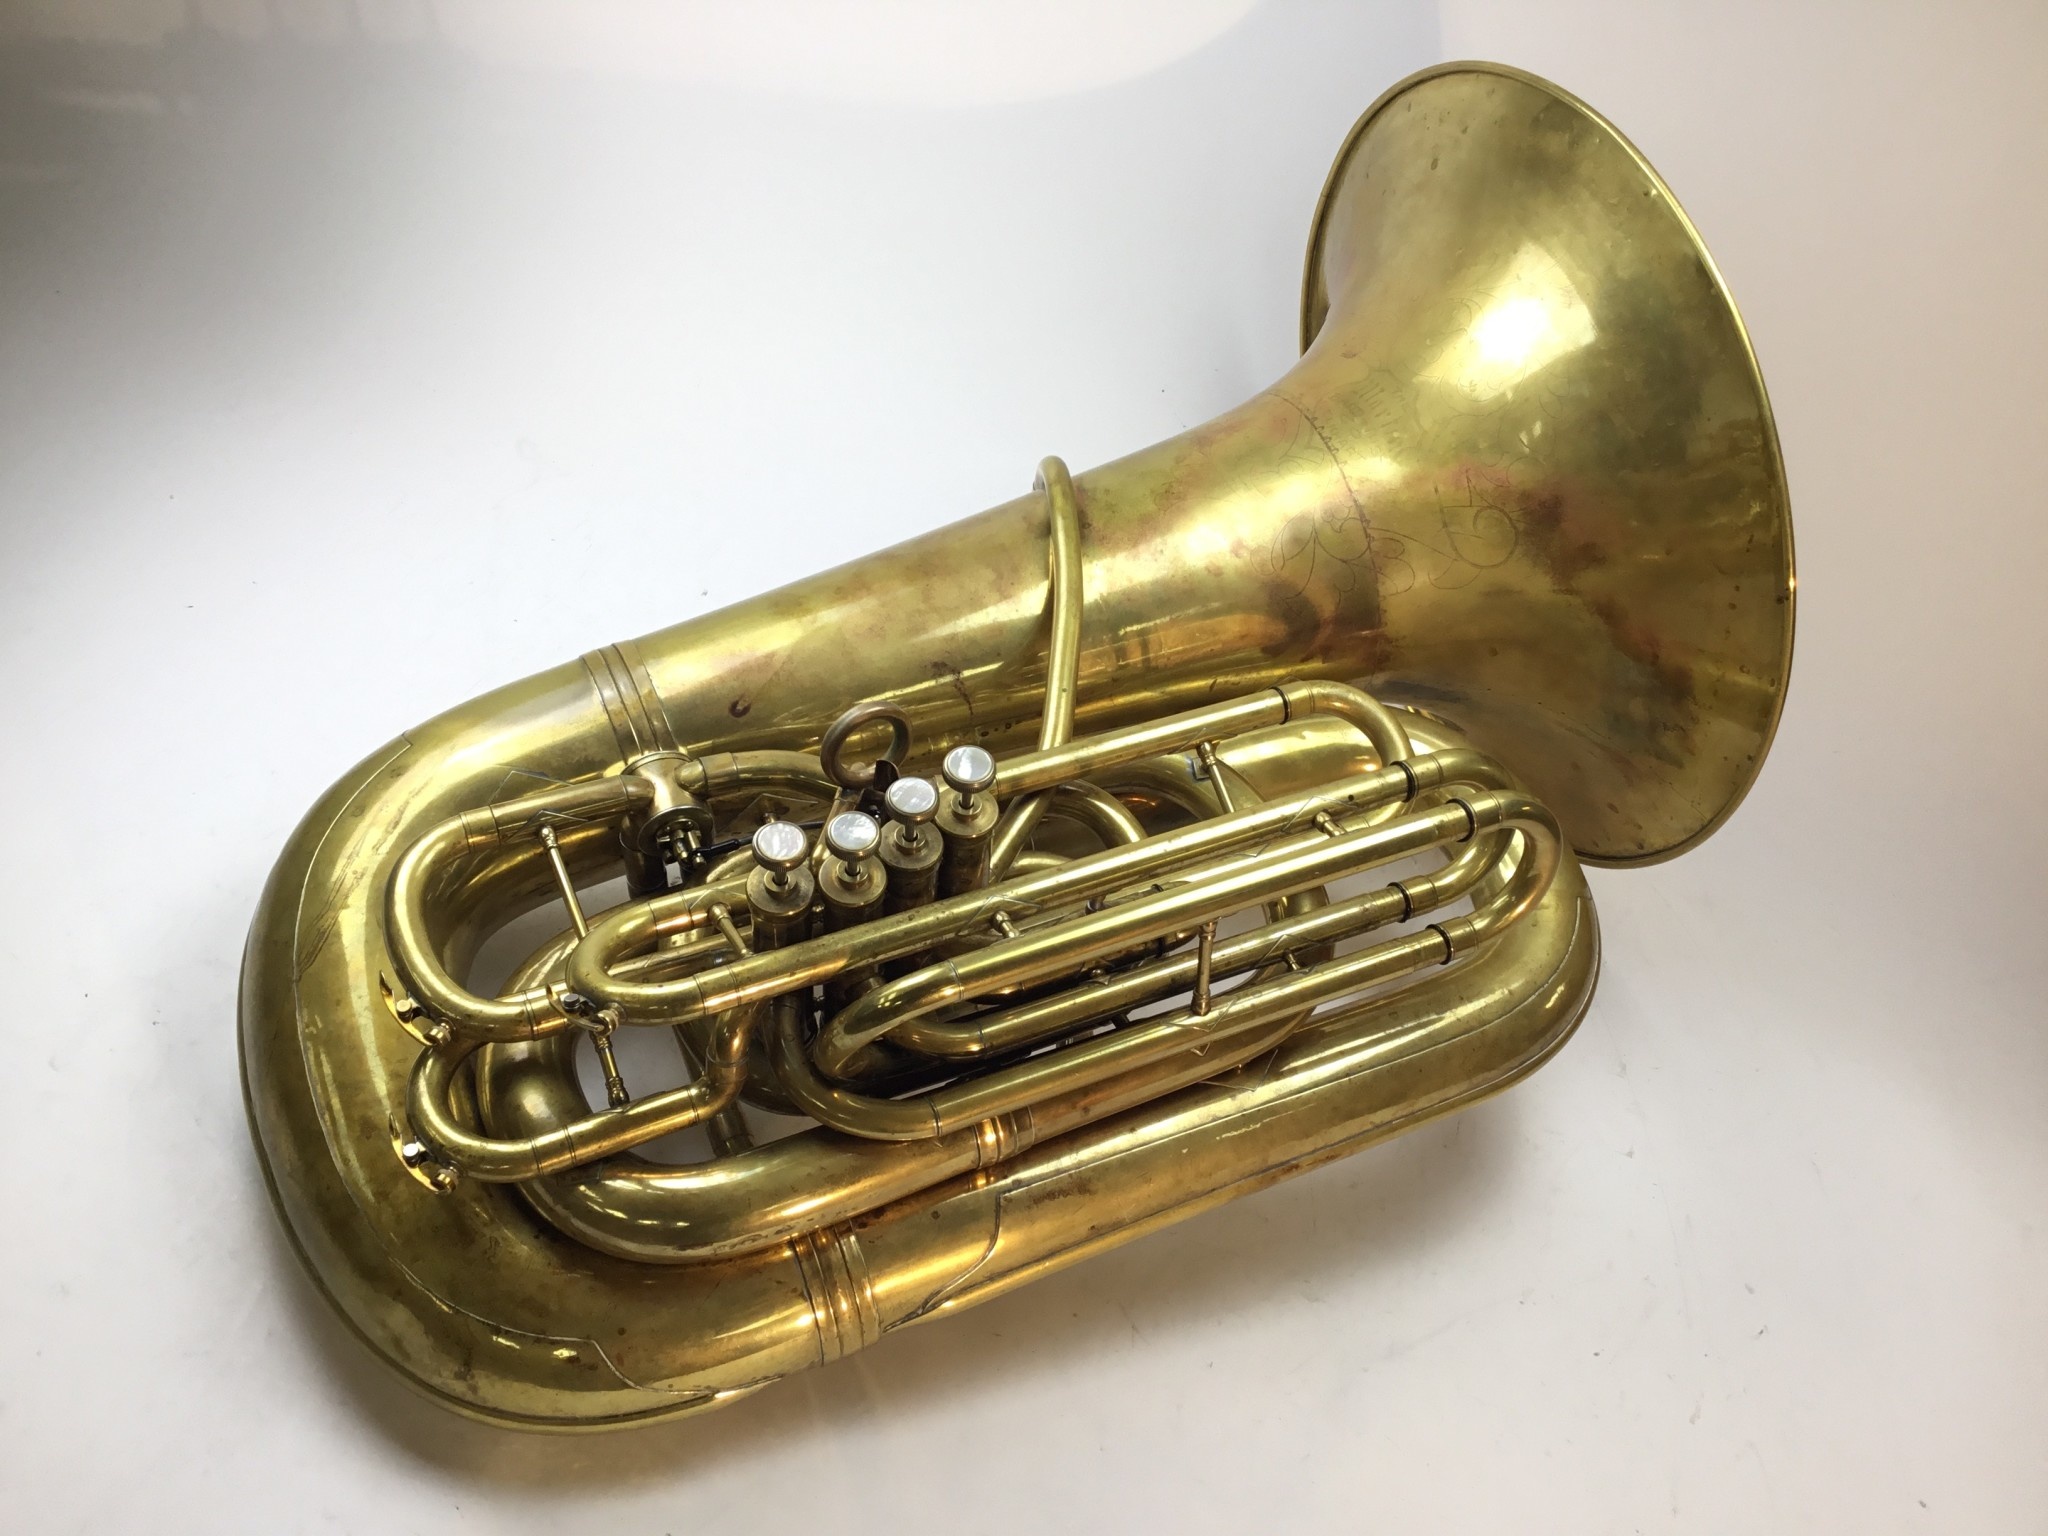 Martin Used Martin Cc Tuba - Trumpet - HD Wallpaper 